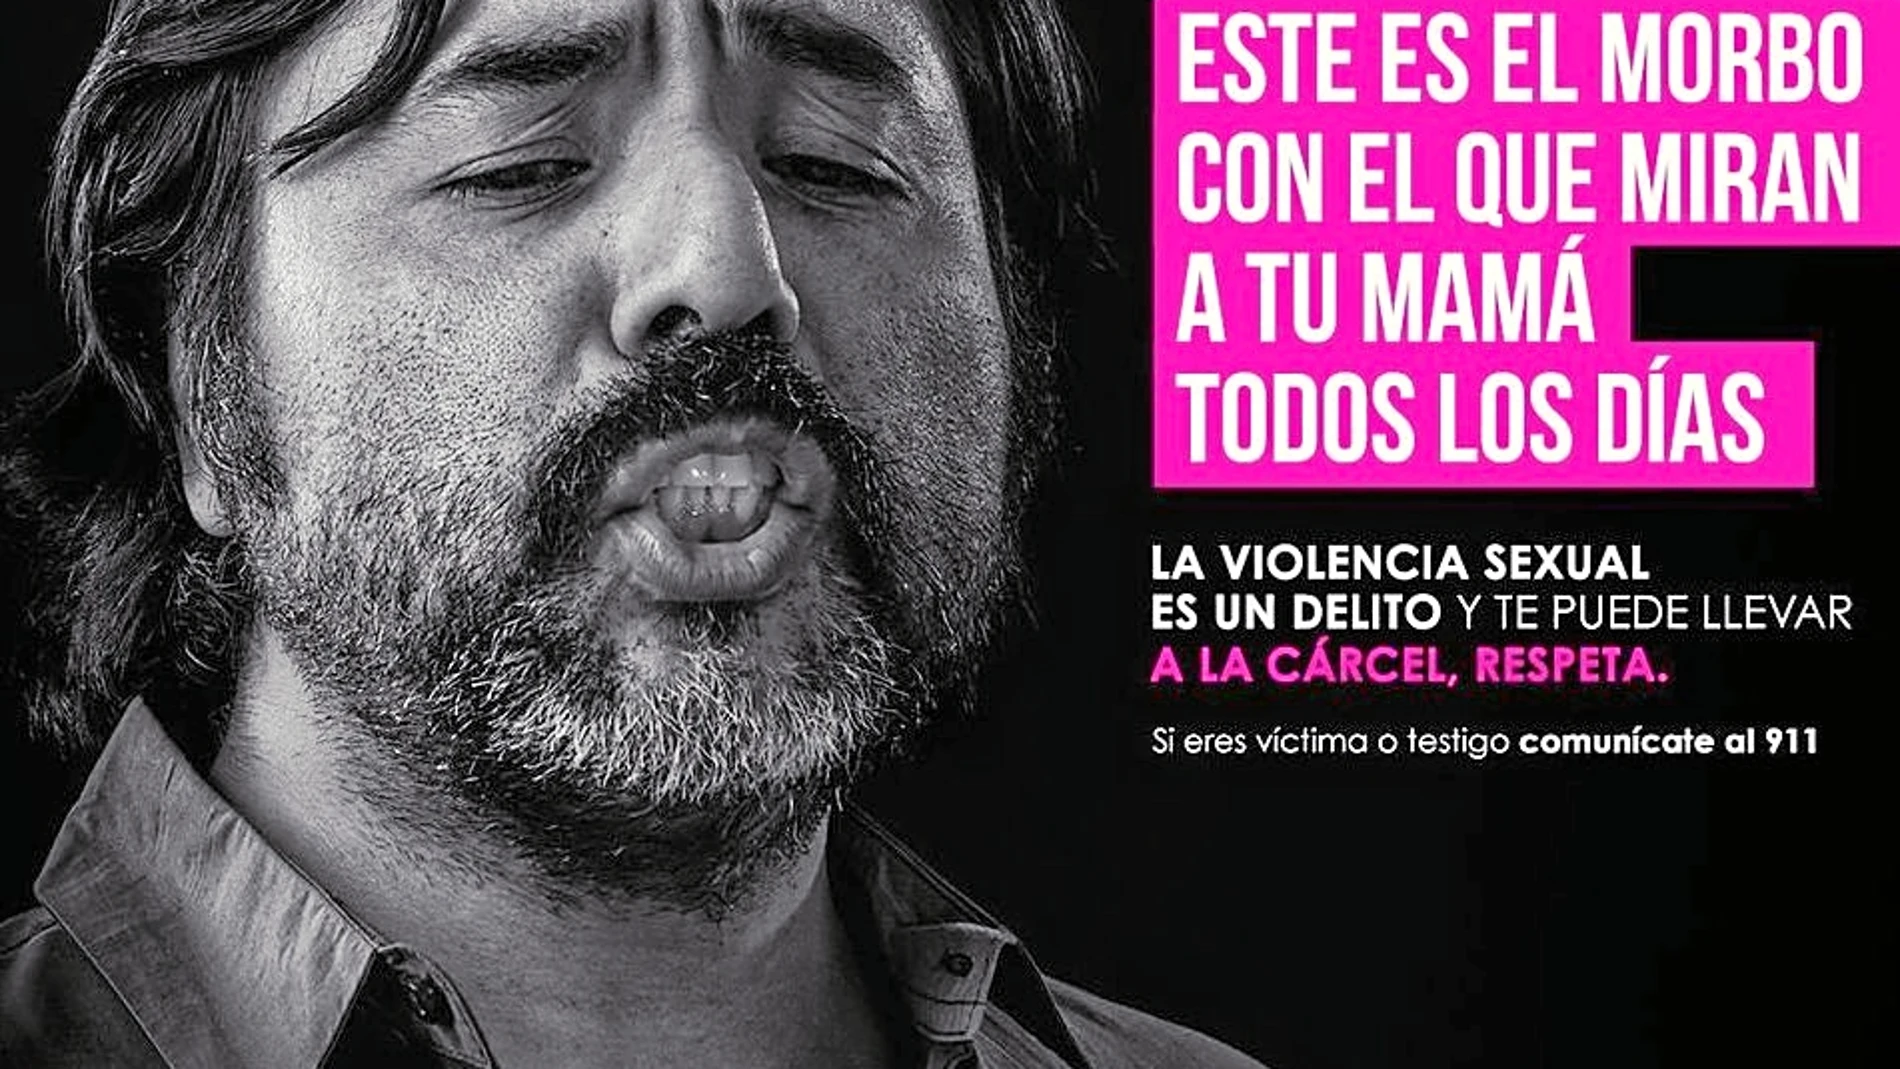 ONUMujeres ha lanzado una campaña recientemente, en colaboración con la Ciudad de México, para evitar el acoso sexual y las violaciones que sufren diariamente cientos de mujeres.